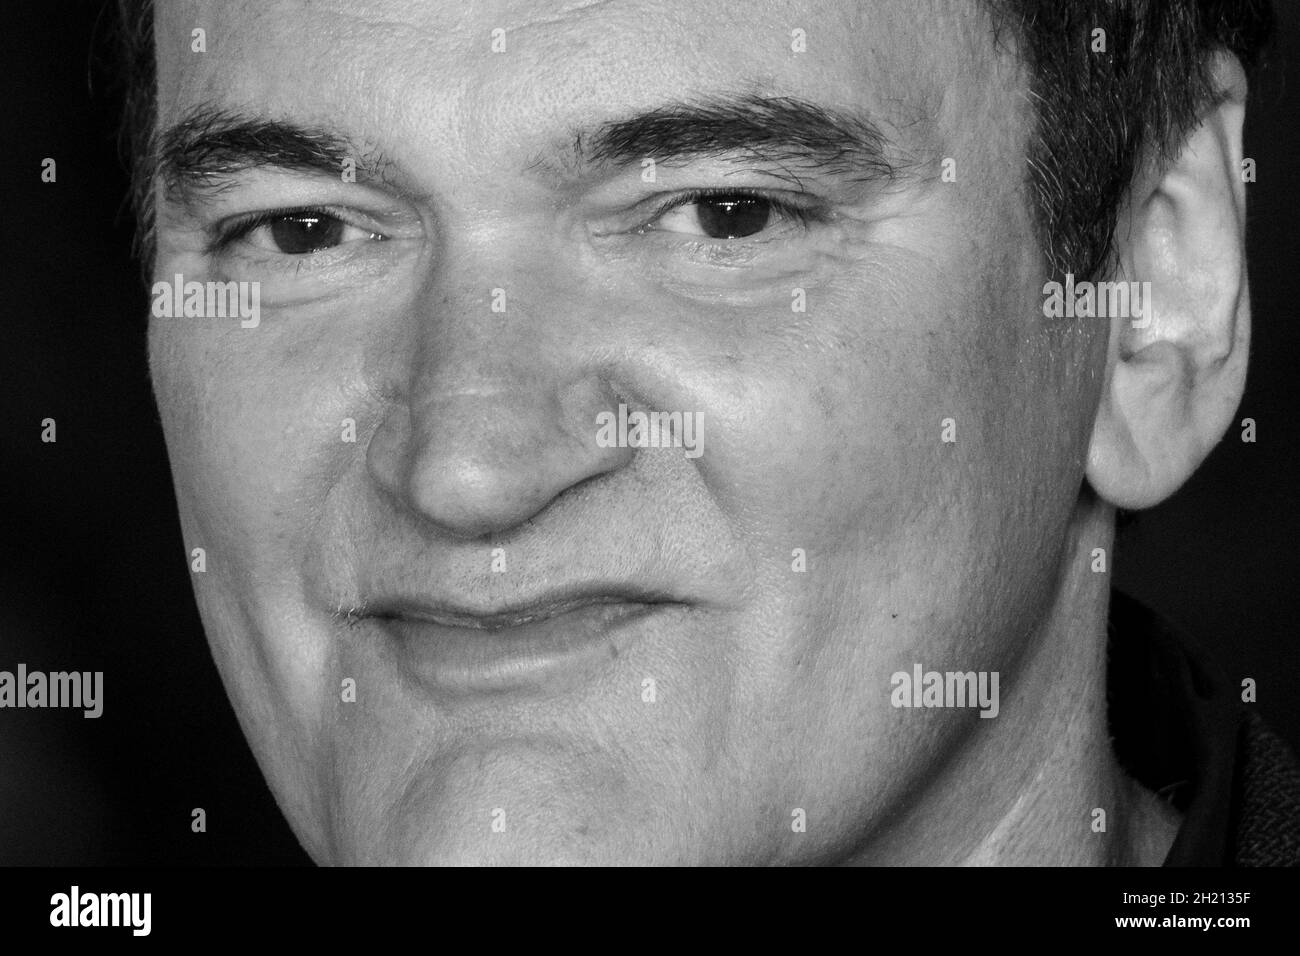 Roma, Italia, 19 ottobre 2021: Quentin Tarantino partecipa al Close Encounter Red carpet durante il 16° Festival del Film di Roma 2021. Credits: Luigi de Pompeis/Alamy Live News Foto Stock